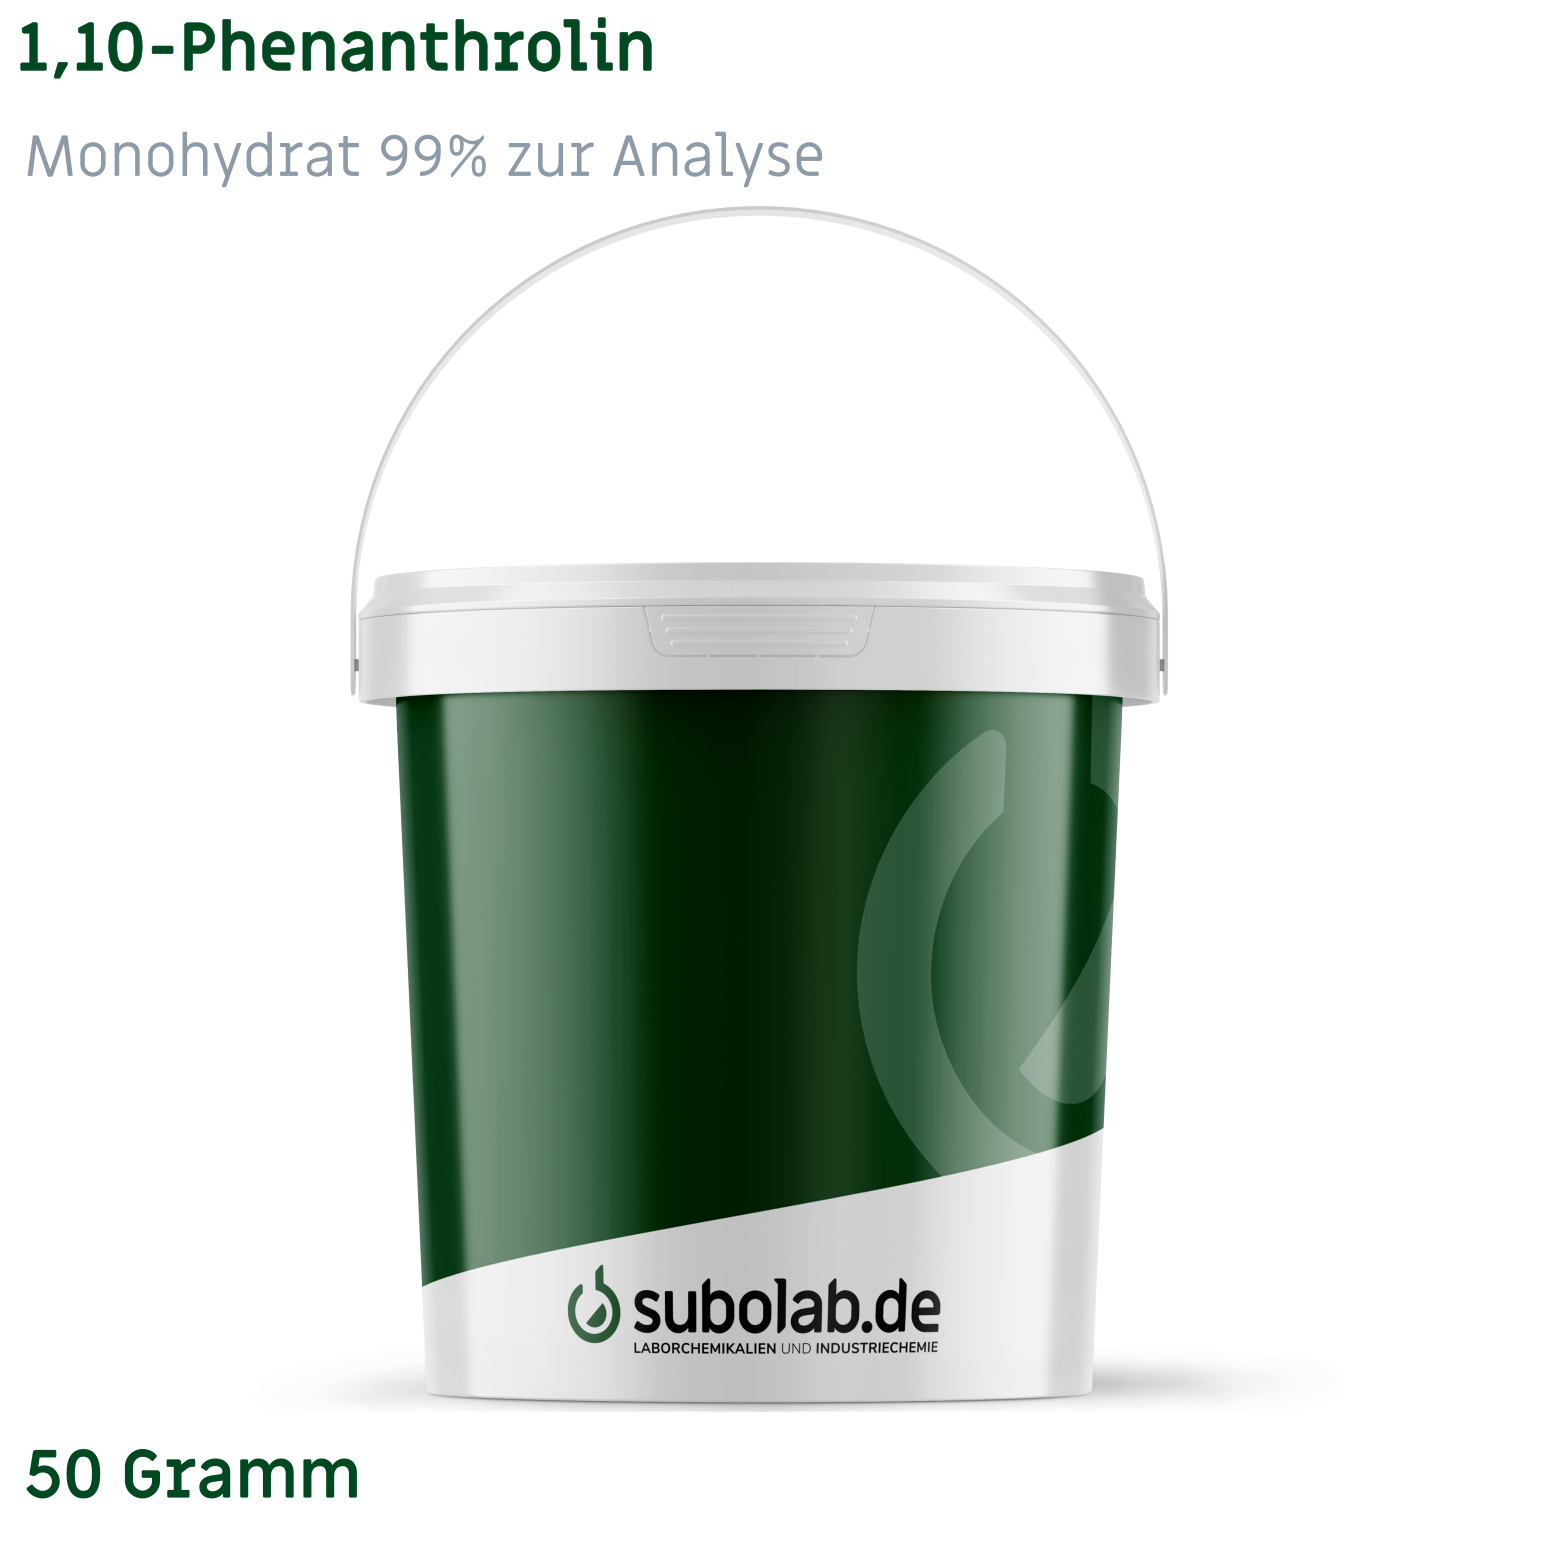 Bild von 1,10-Phenanthrolin - Monohydrat 99% zur Analyse (50 Gramm)